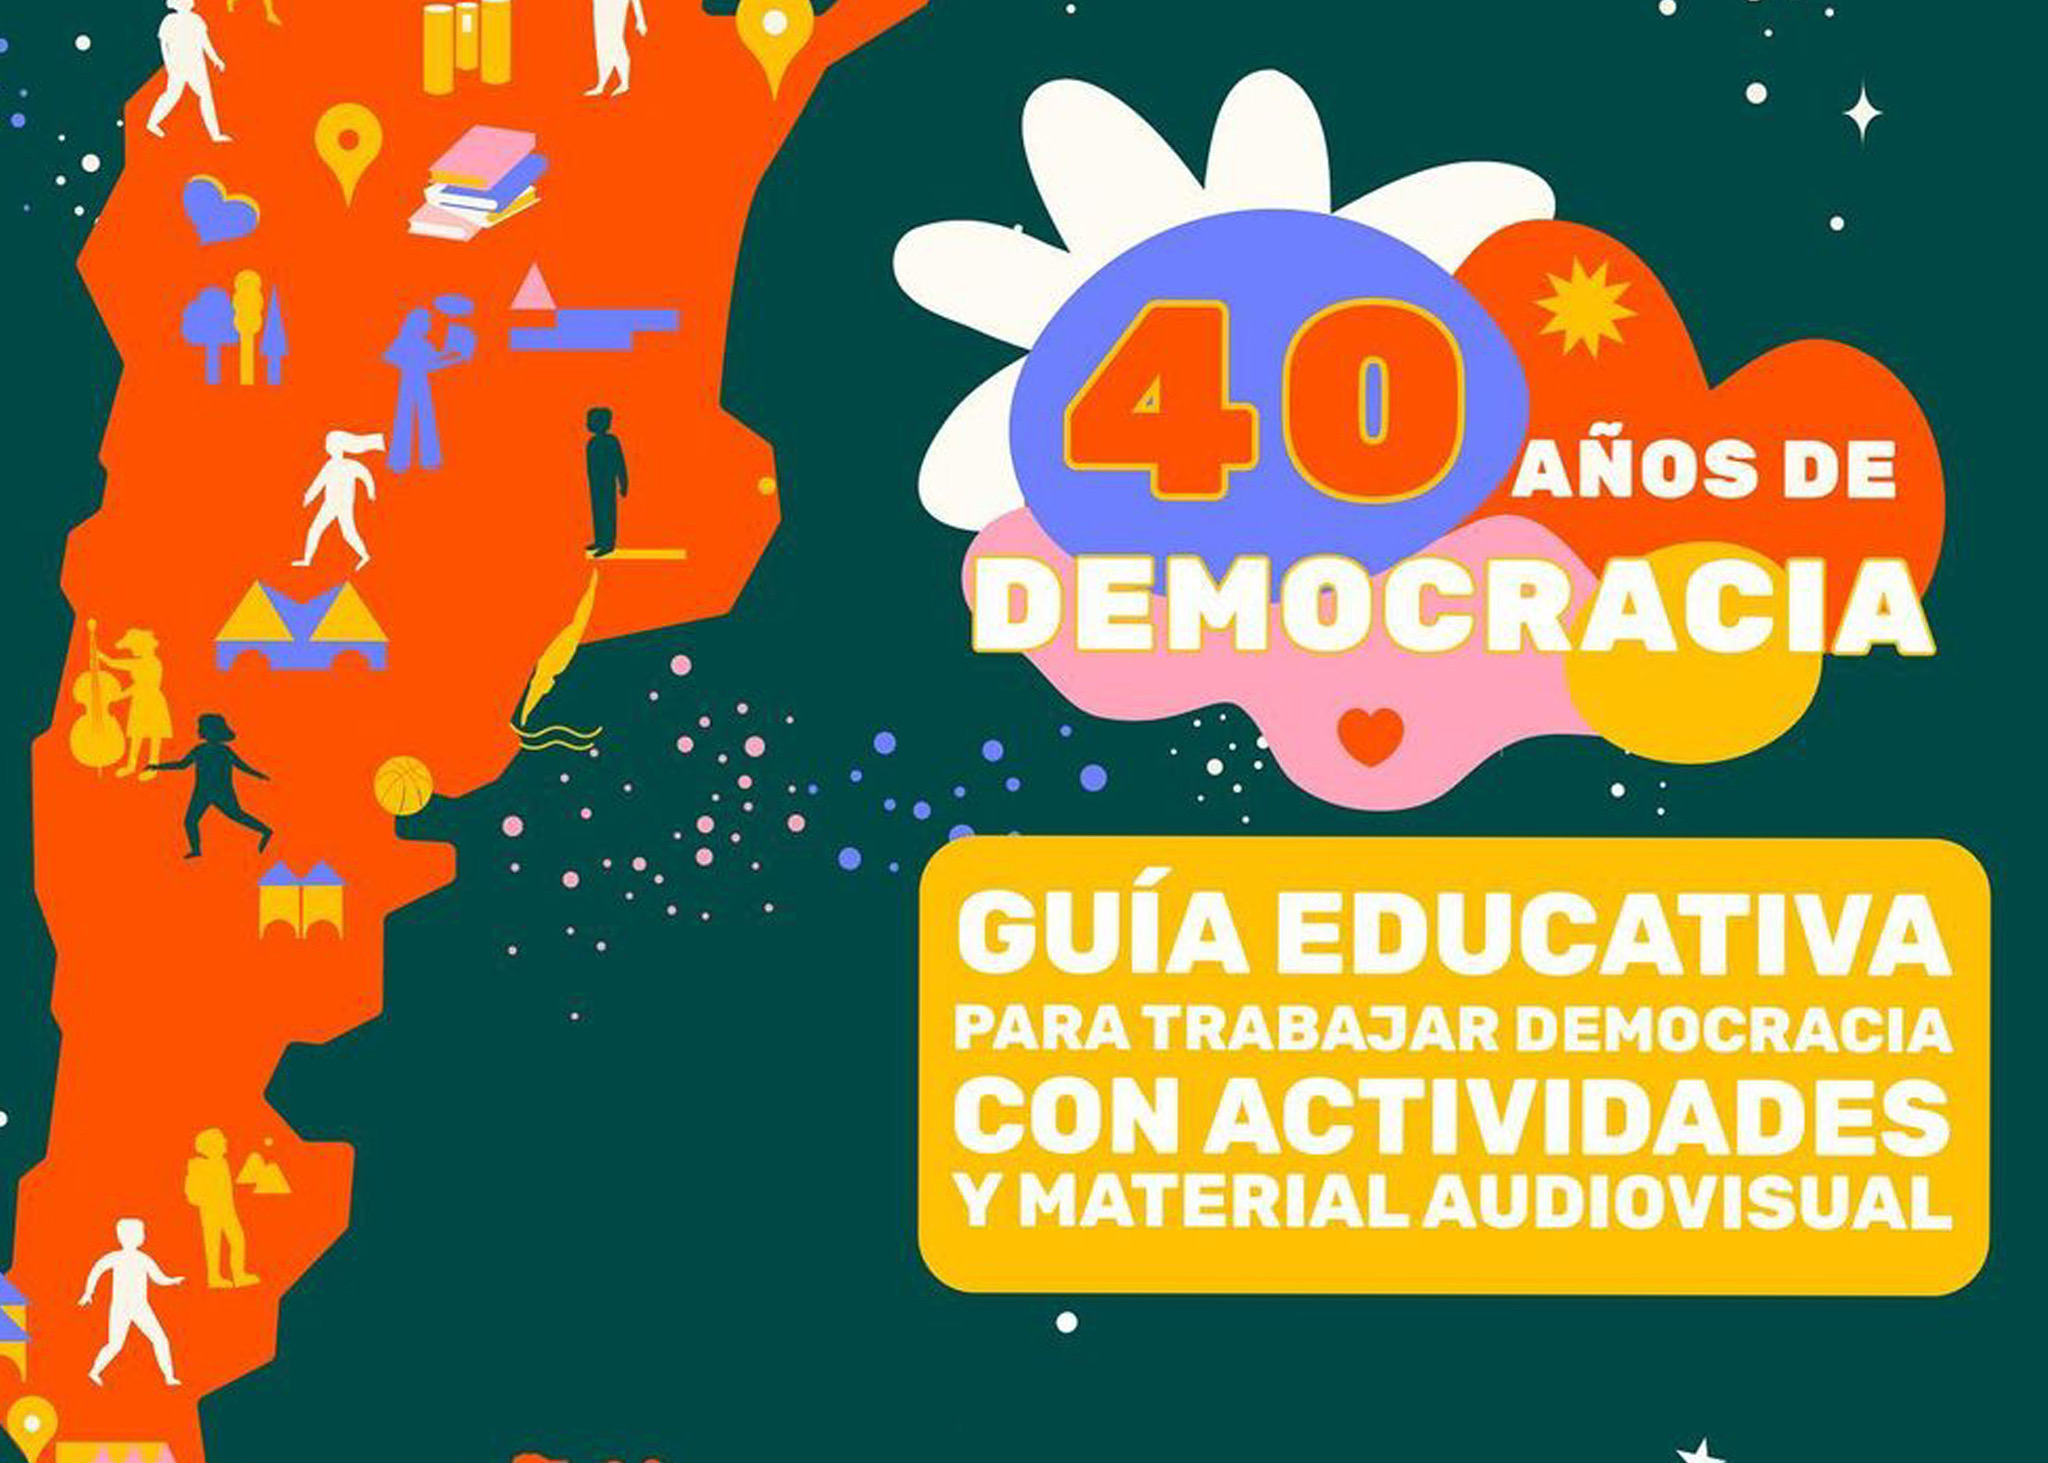 Guía educativa para trabajar Democracia con actividades y material audiovisual